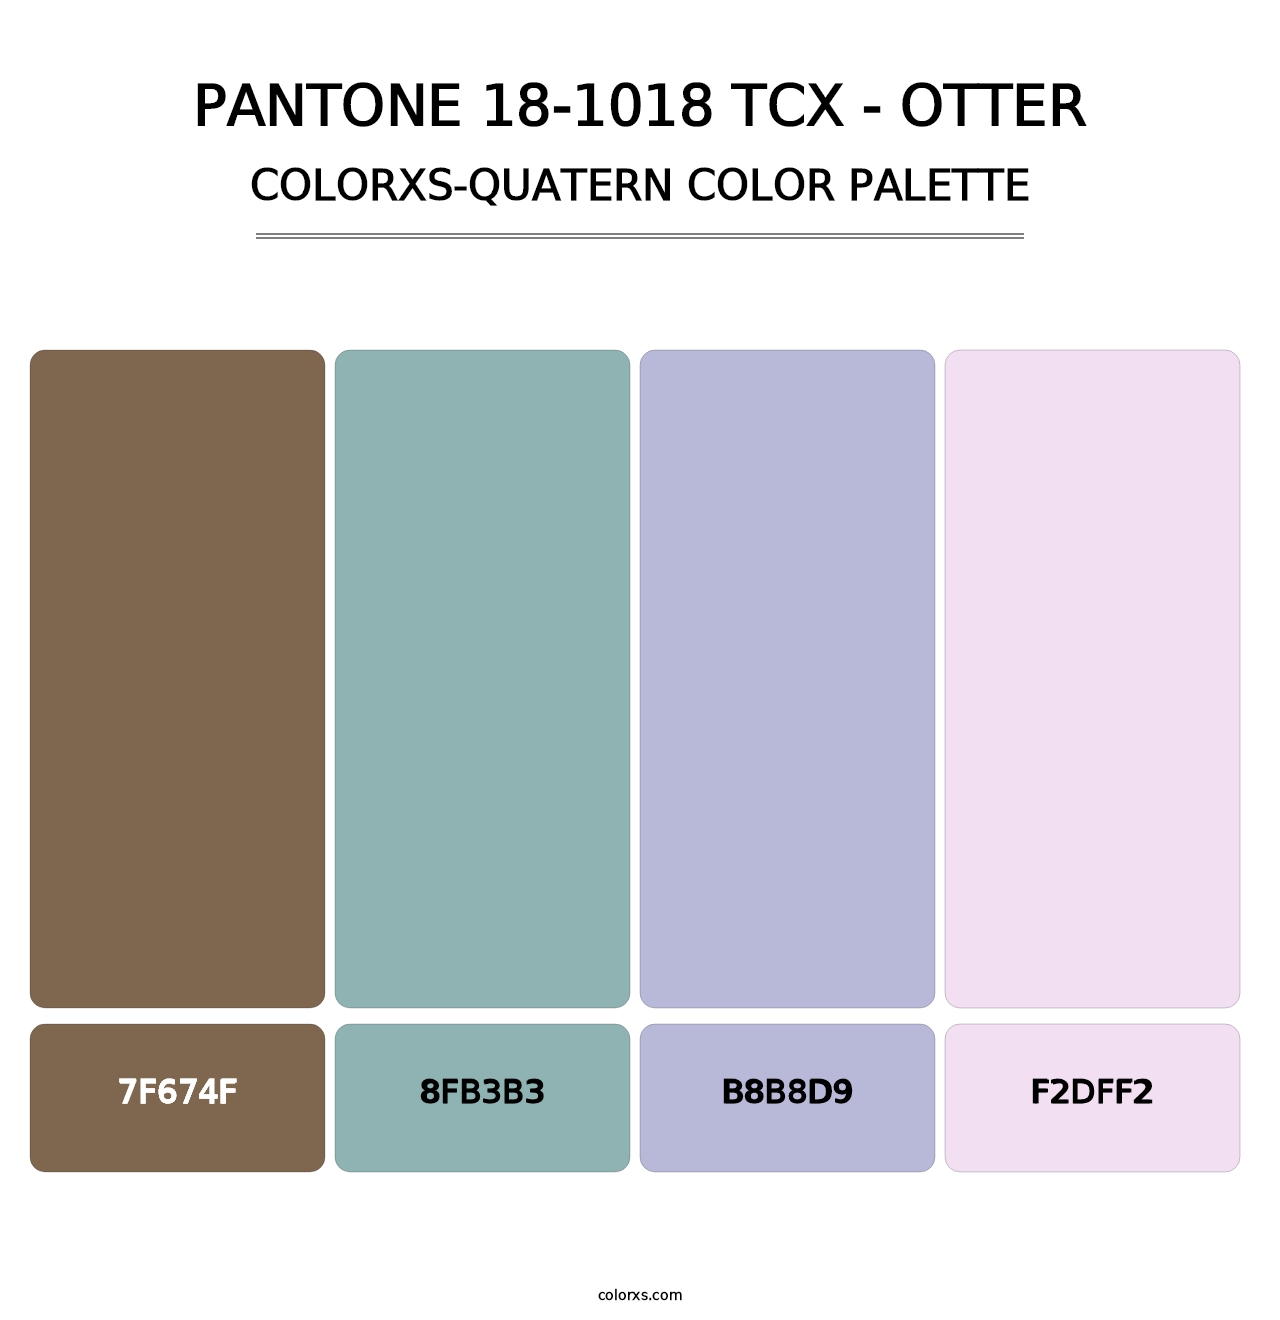 PANTONE 18-1018 TCX - Otter - Colorxs Quatern Palette